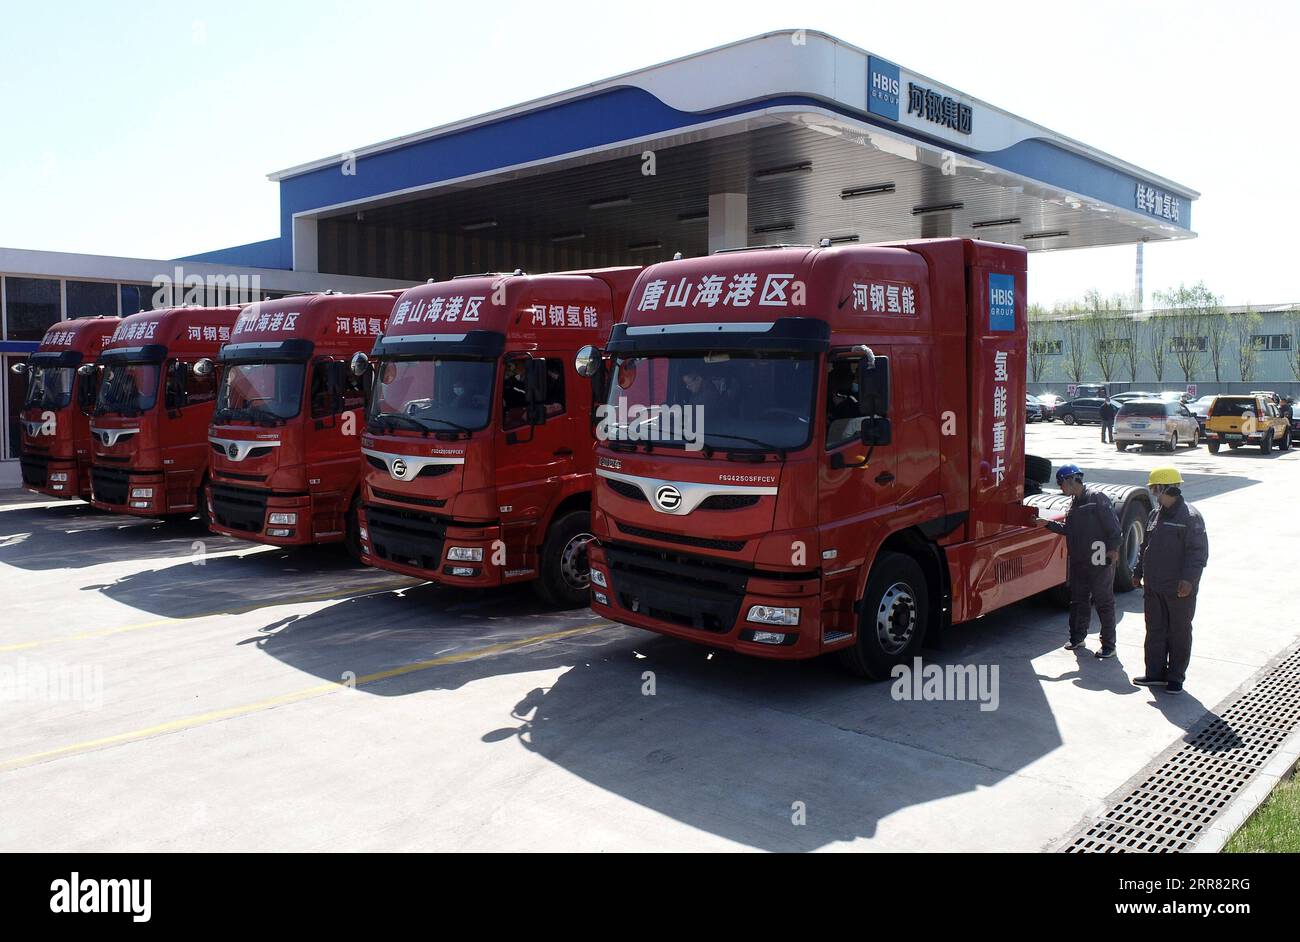 210414 -- TANGSHAN, 14 aprile 2021 -- la foto scattata con un drone mostra i lavoratori che esaminano cinque camion pesanti alimentati a idrogeno di recente introduzione nella zona di sviluppo economico di Tangshan Haigang a Tangshan, nella provincia di Hebei nella Cina settentrionale, 14 aprile 2021. Mercoledì sono stati introdotti cinque camion pesanti alimentati a idrogeno dalla zona di sviluppo economico di Tangshan Haigang. La flotta di veicoli industriali è tra i primi tentativi della zona di ottimizzare la struttura industriale e il consumo energetico sostituendo gradualmente il carburante diesel con le celle di alimentazione a idrogeno più ecologiche. CINA-HEBEI-TANGSHAN- Foto Stock